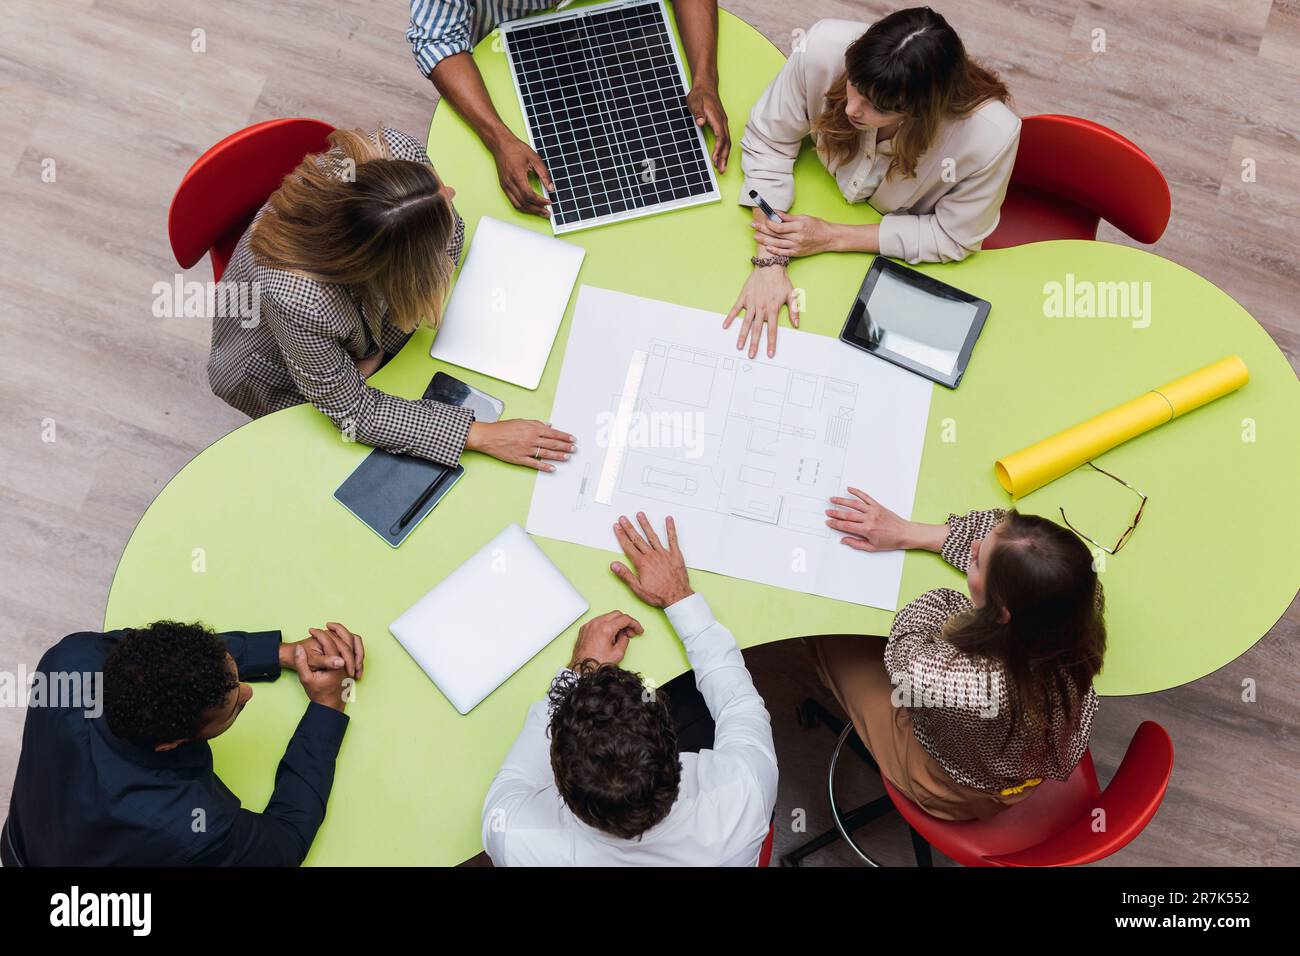 Aus einem großen Blickwinkel können Sie Kollegen sehen, die ein Meeting mit einem Plan, drahtlosen Geräten und Solarmodul auf dem Tisch abhalten Stockfoto